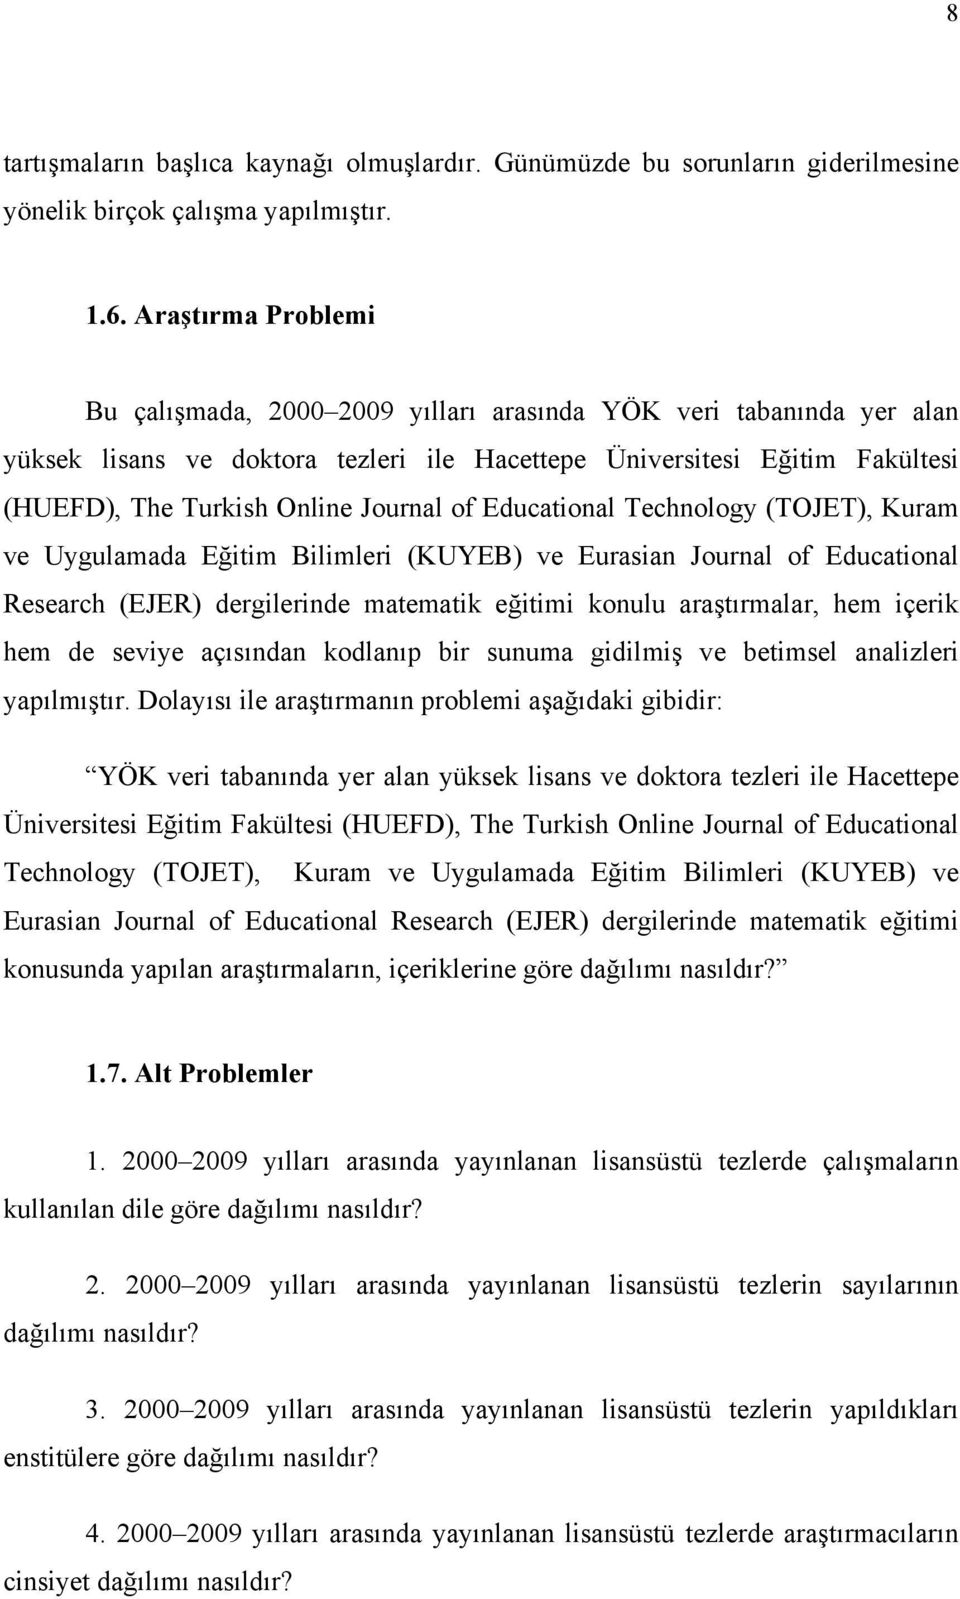 Educational Technology (TOJET), Kuram ve Uygulamada Eğitim Bilimleri (KUYEB) ve Eurasian Journal of Educational Research (EJER) dergilerinde matematik eğitimi konulu araştırmalar, hem içerik hem de